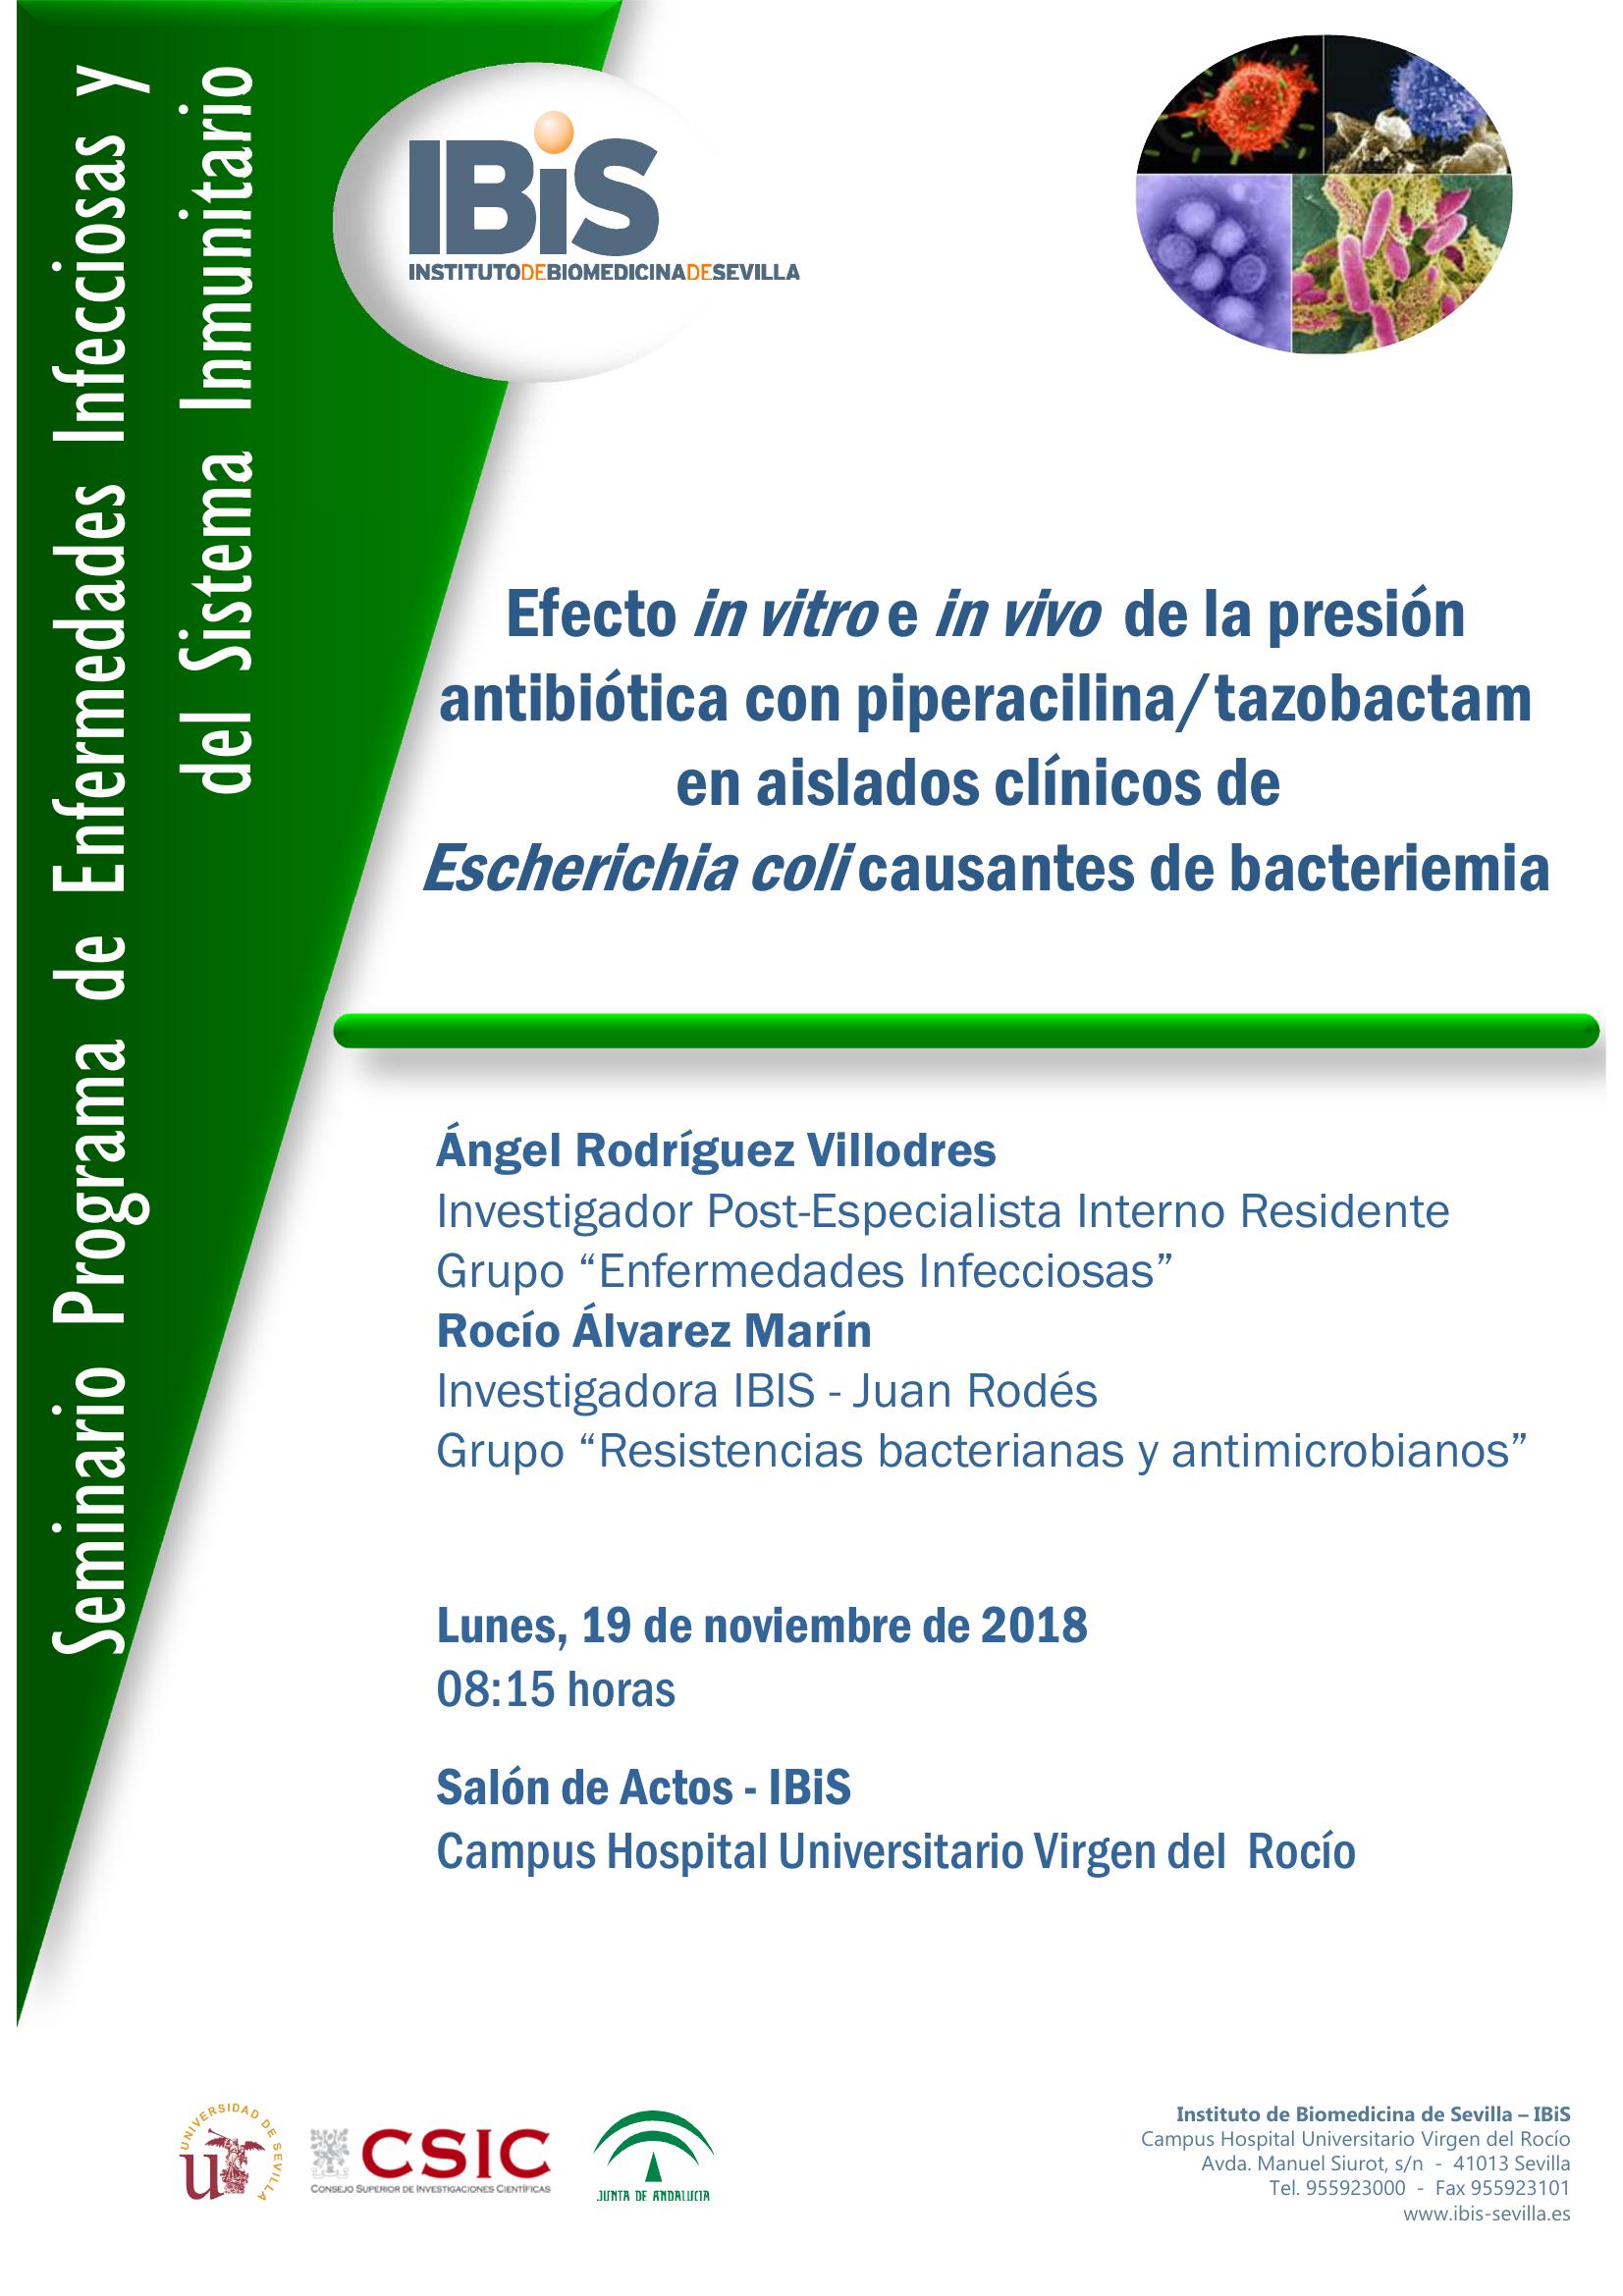 Poster: Efecto in vitro e in vivo  de la presión antibiótica con piperacilina/tazobactam en aislados clínicos de  Escherichia coli causantes de bacteriemia